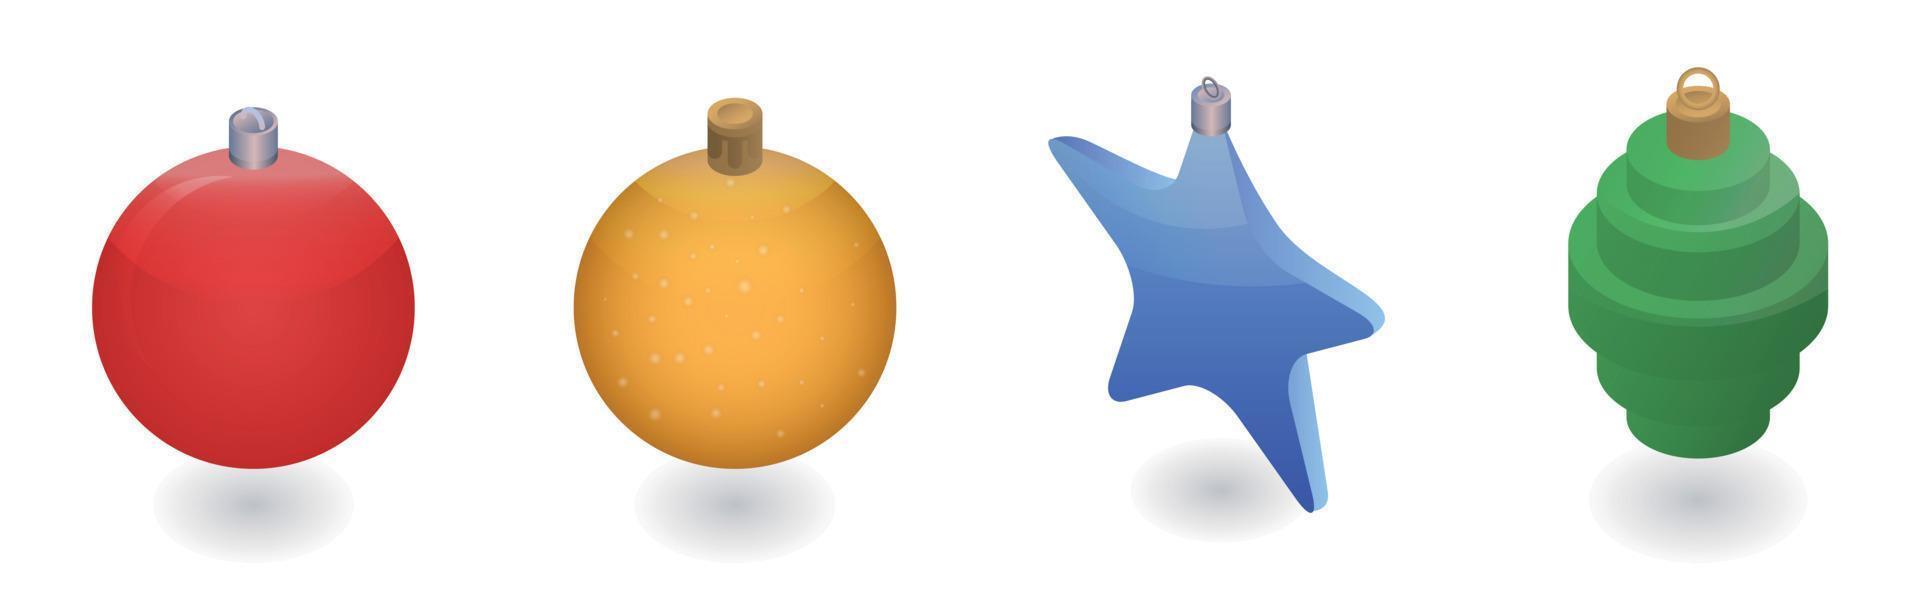 kerstboom speelgoed icon set, isometrische stijl vector